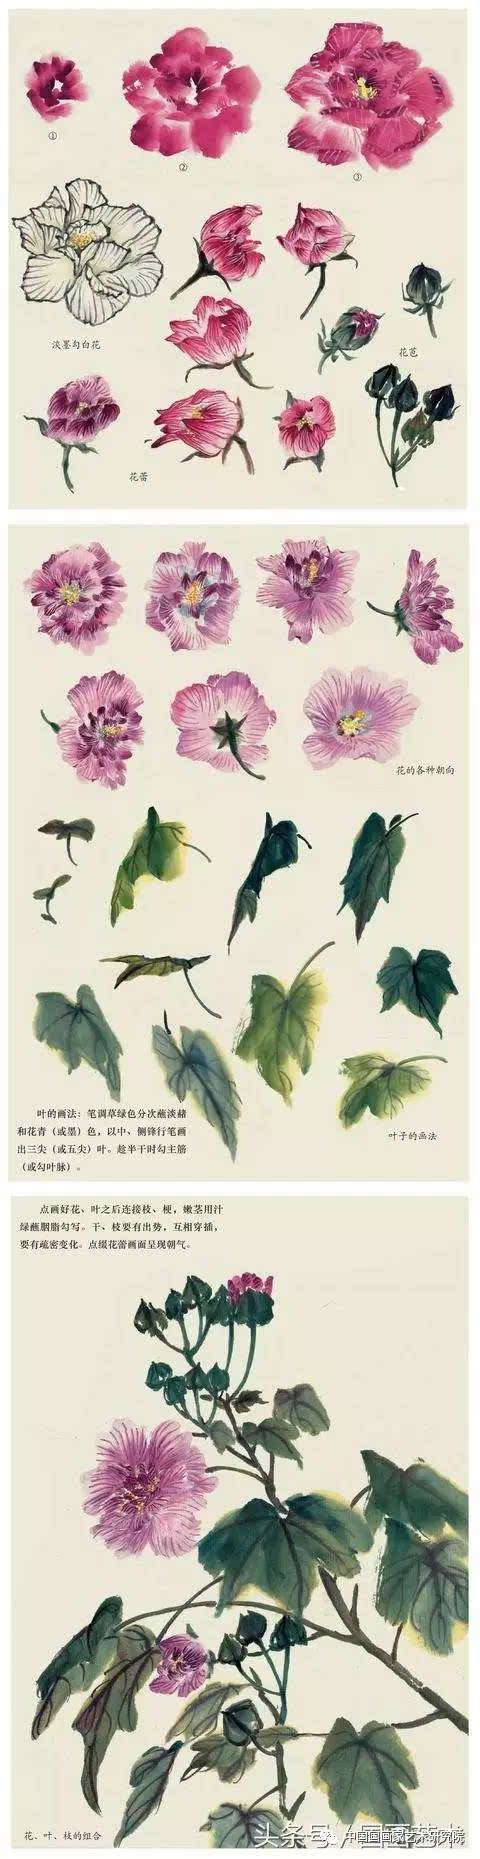 写意紫藤,木芙蓉,芍药等7种花卉的画法图解